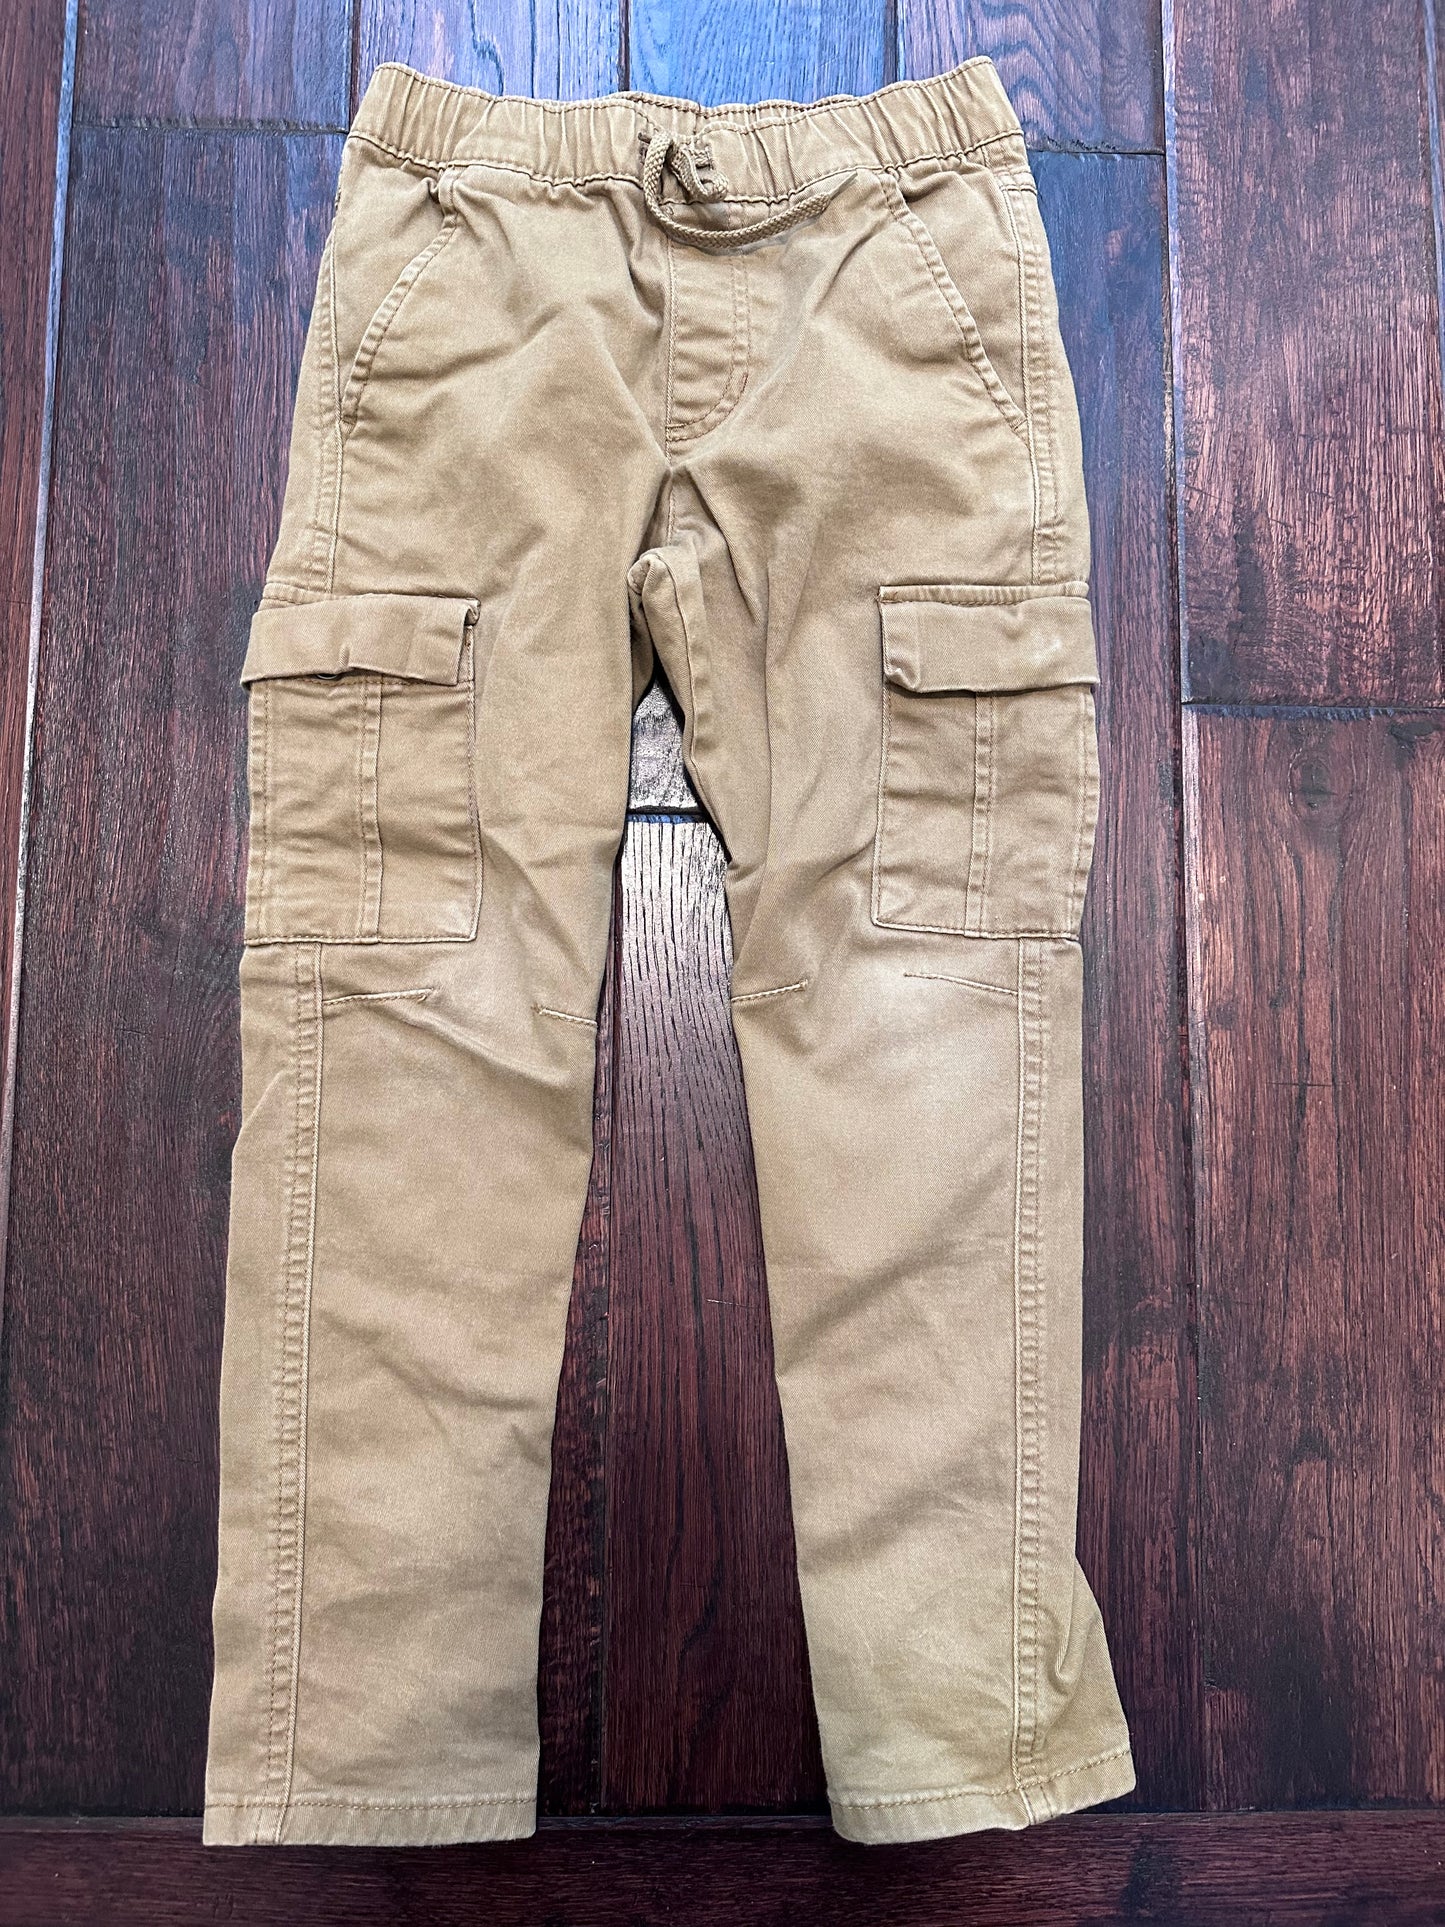 Cat & Jack - Khaki Cargo Pants - Boys Size 7